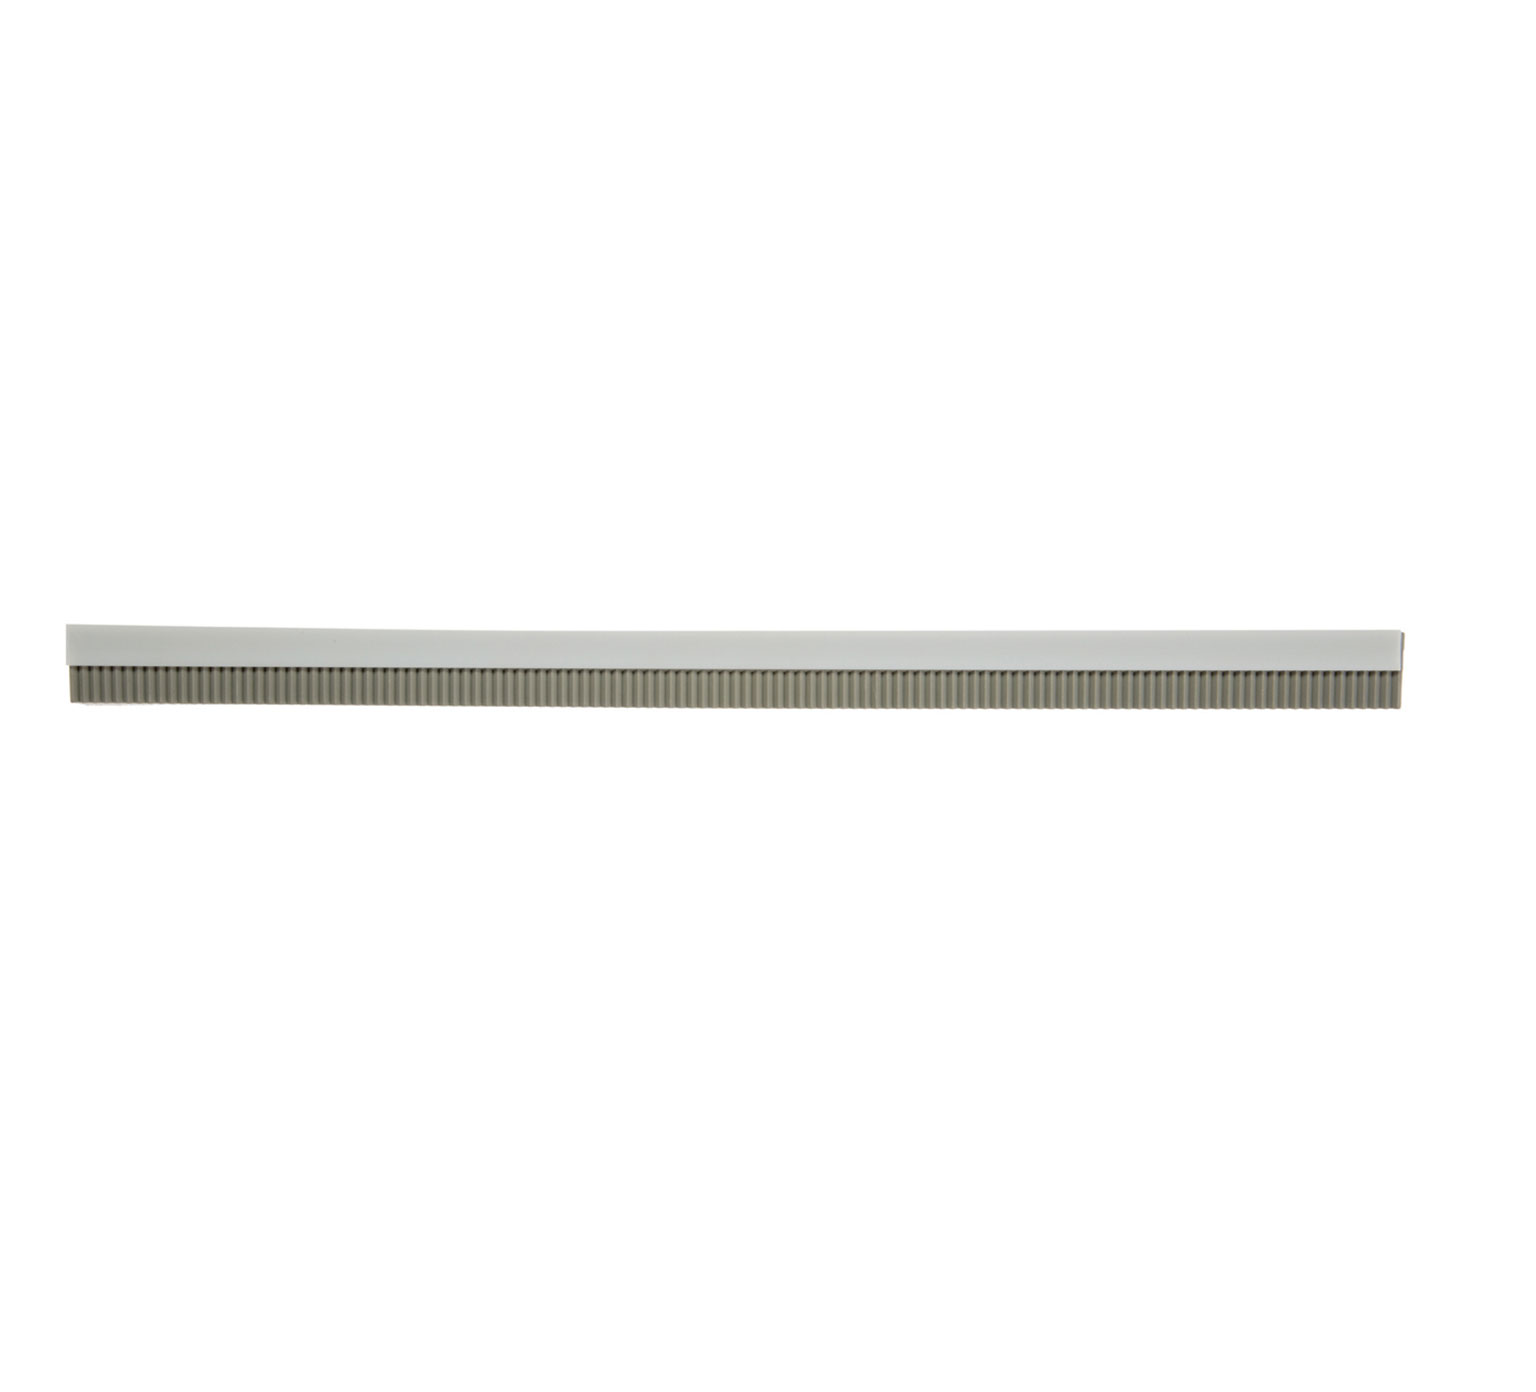 1061356 Lance de lame de raclette en néoprène - 14 po / 35,56 cm (Lot de 2) alt 1